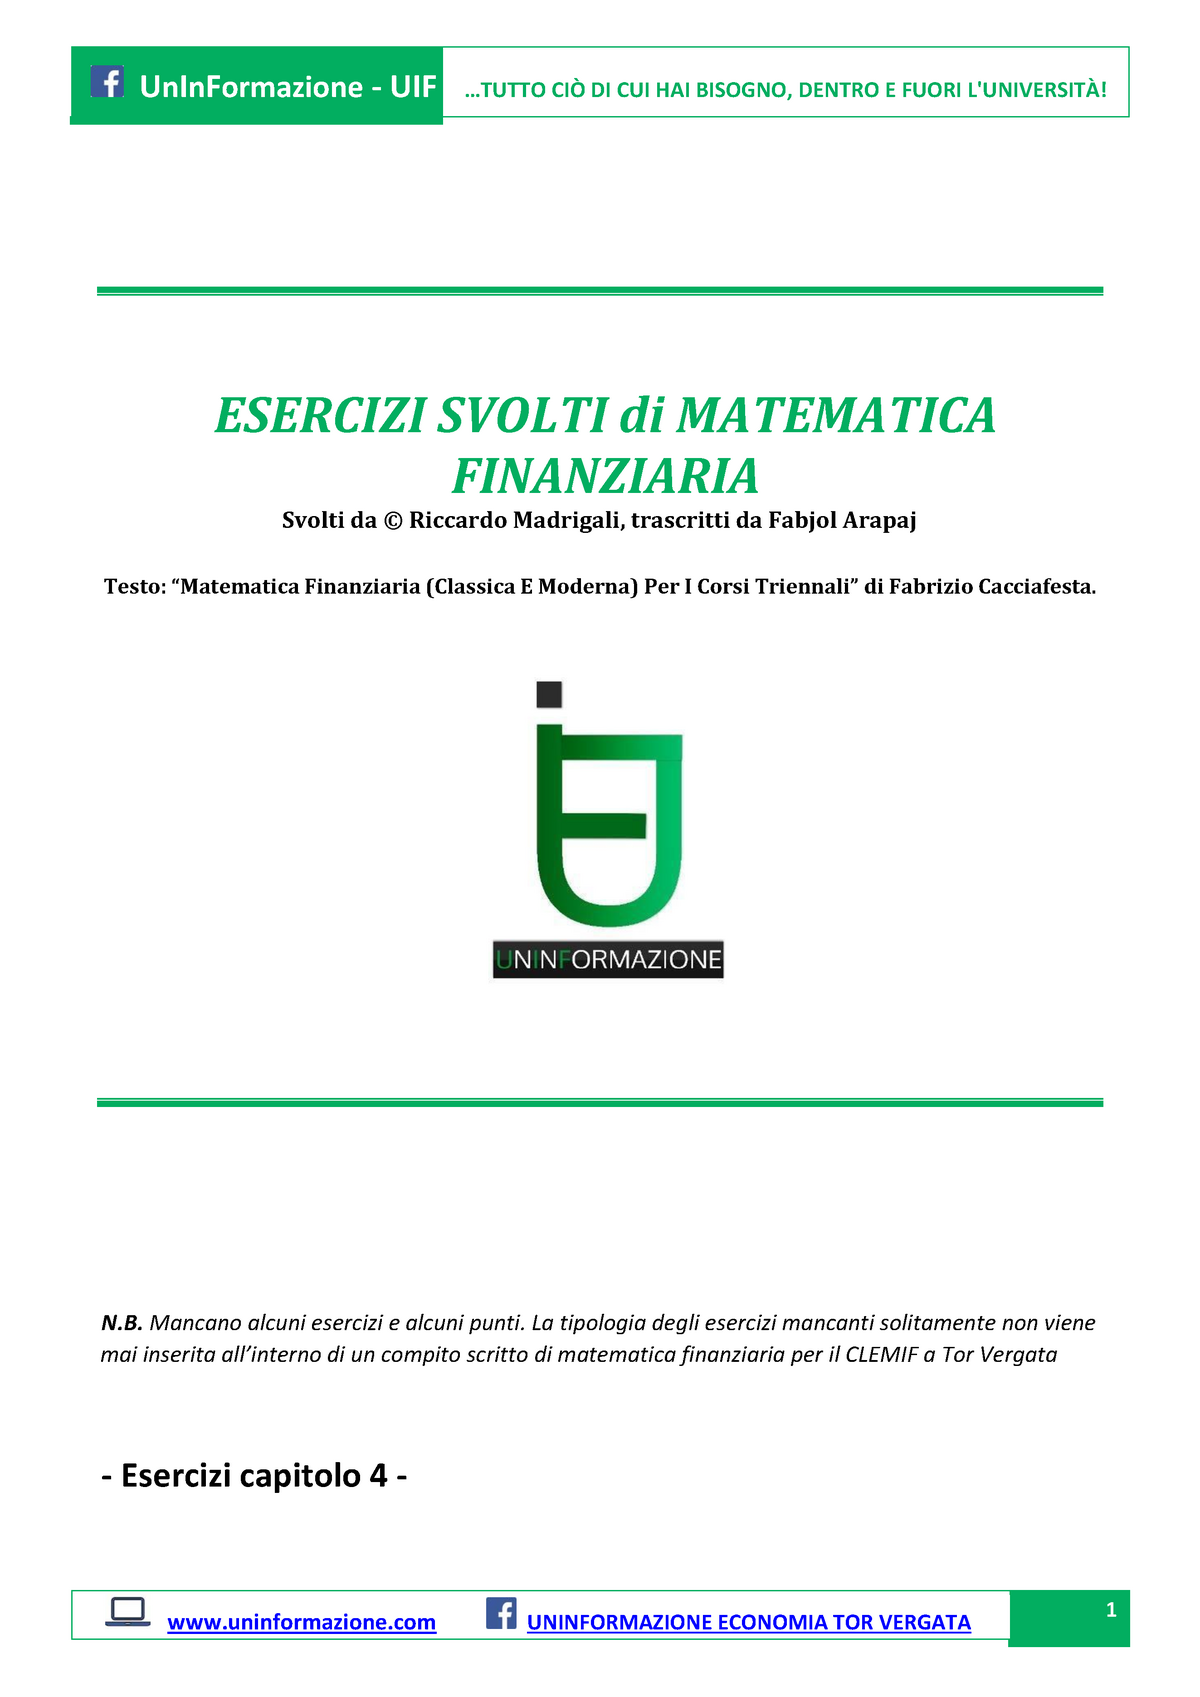 Matematica Finanziaria cacciafesta esercizi svolti cap 4 - ESERCIZI SVOLTI  di MATEMATICA FINANZIARIA - Studocu